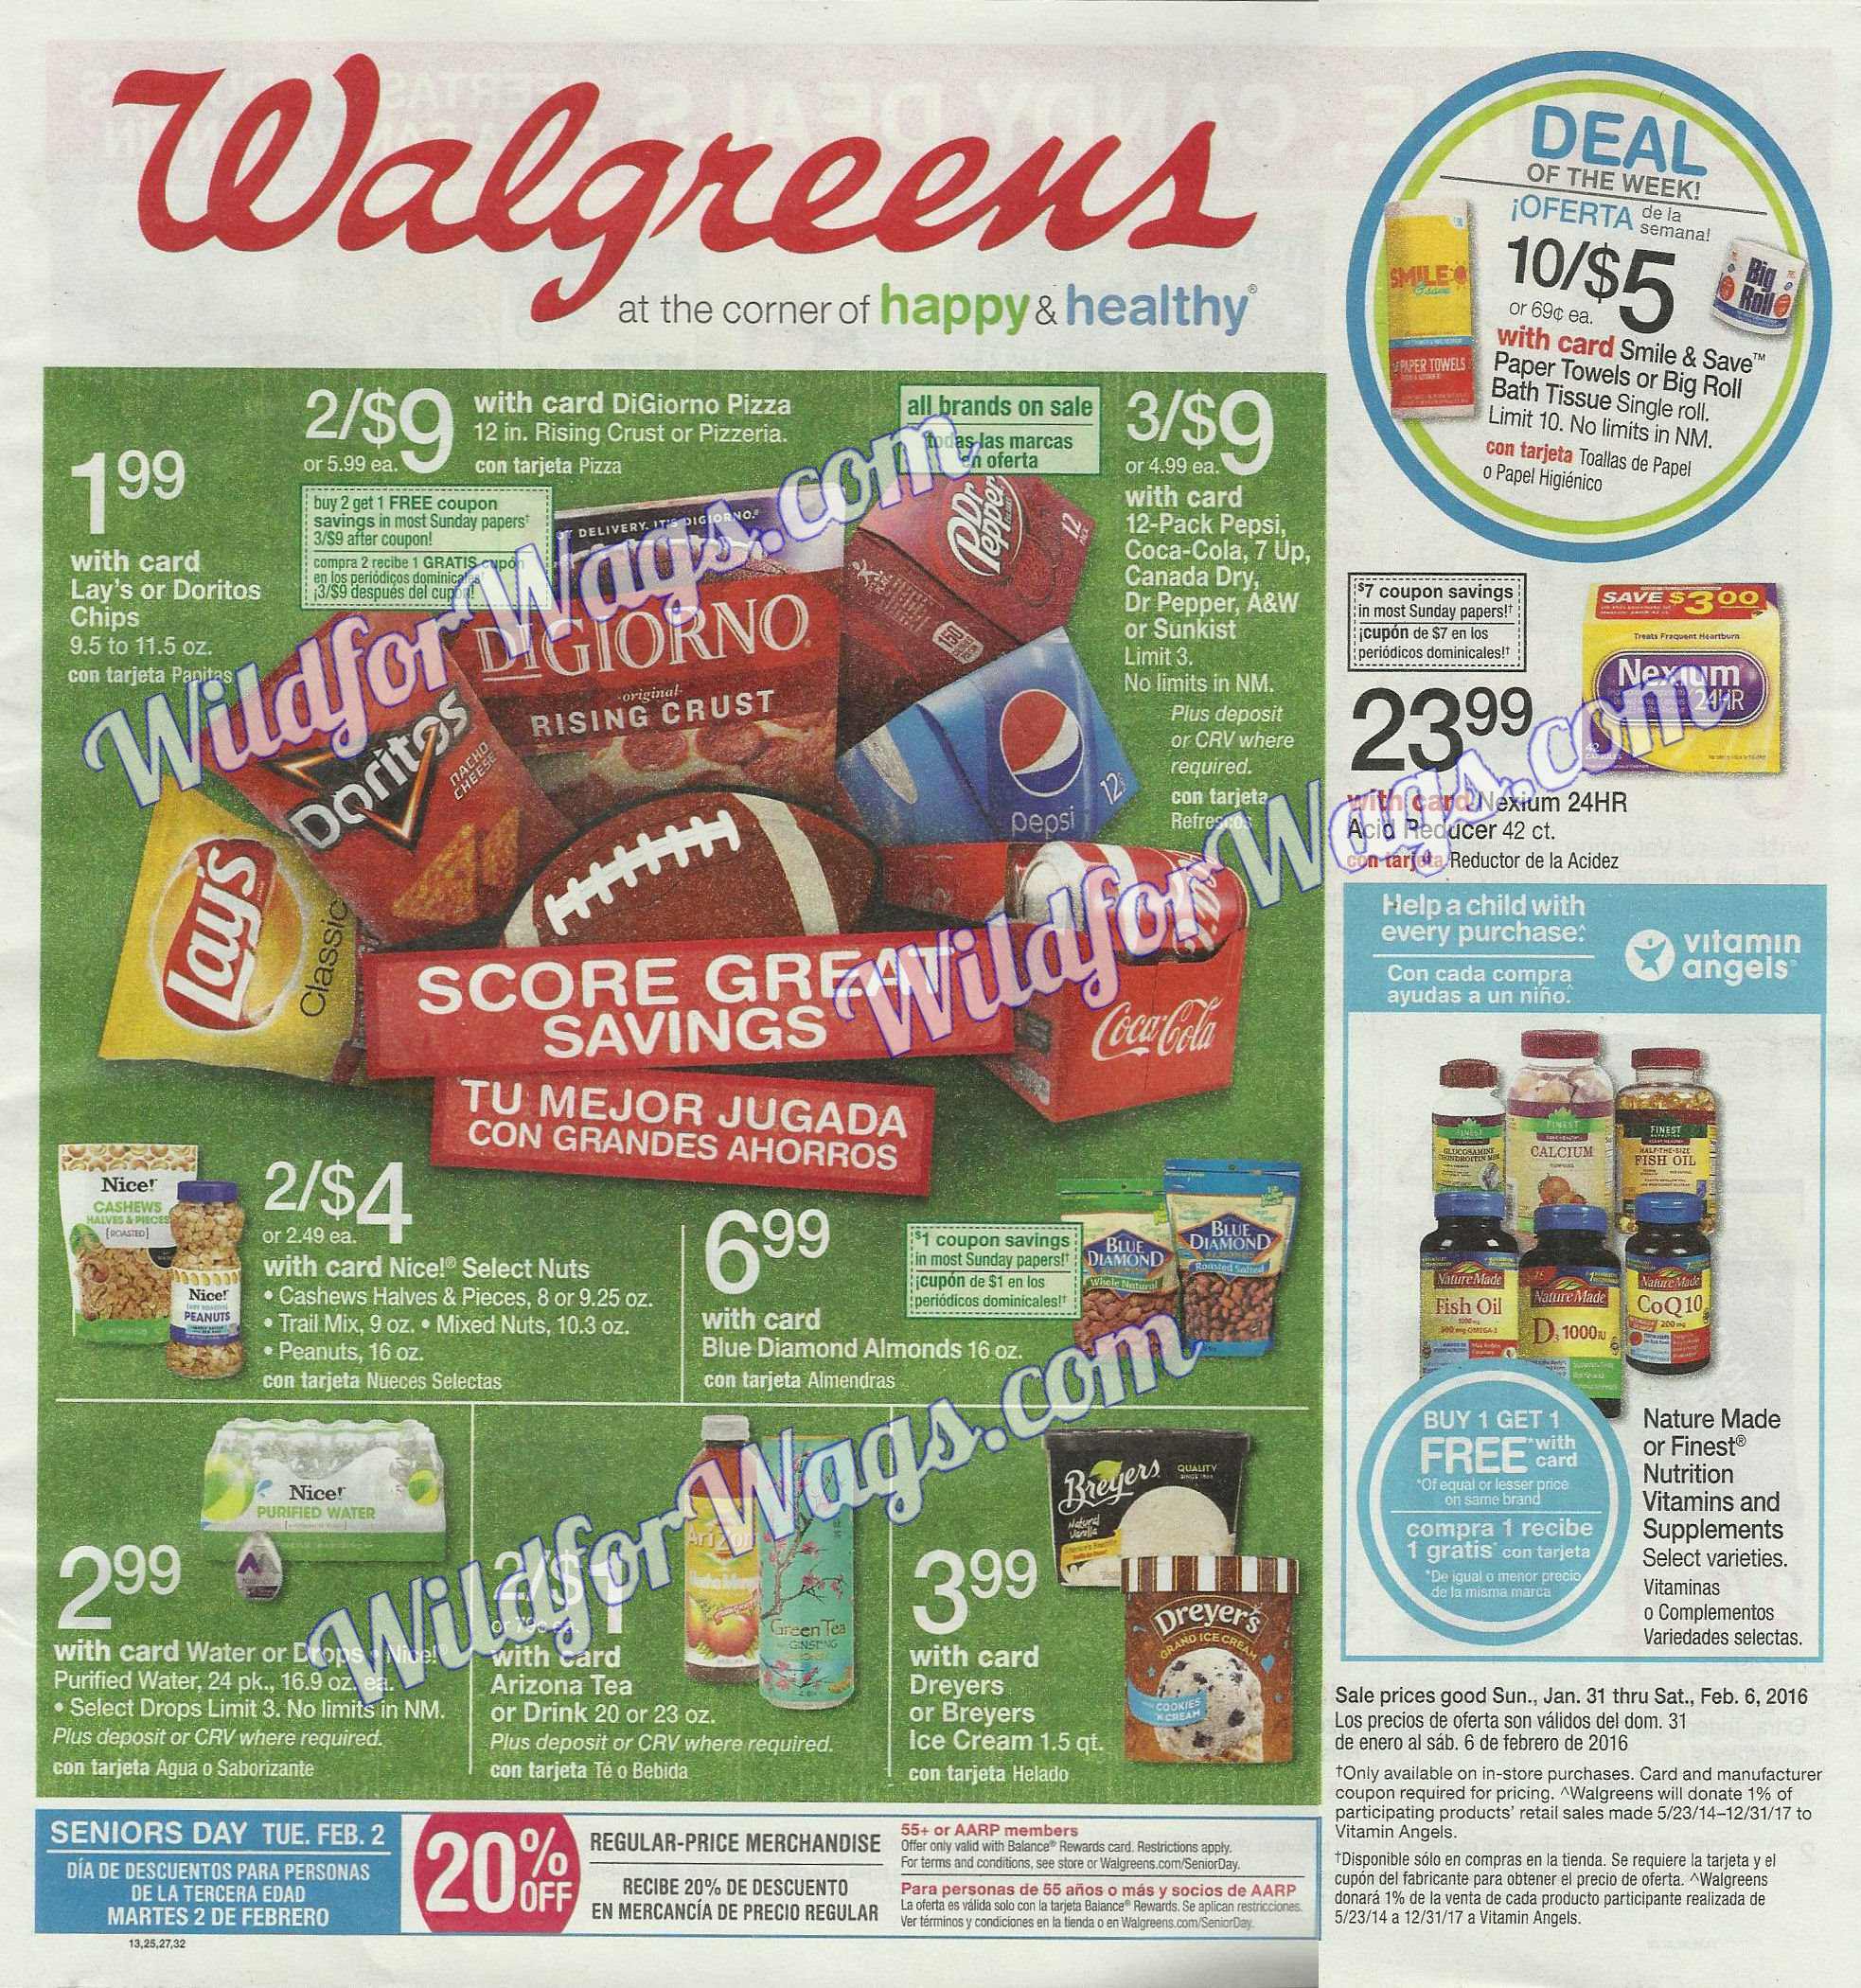 Walgreens Weekly Ad Sneak Peek 1/31/16